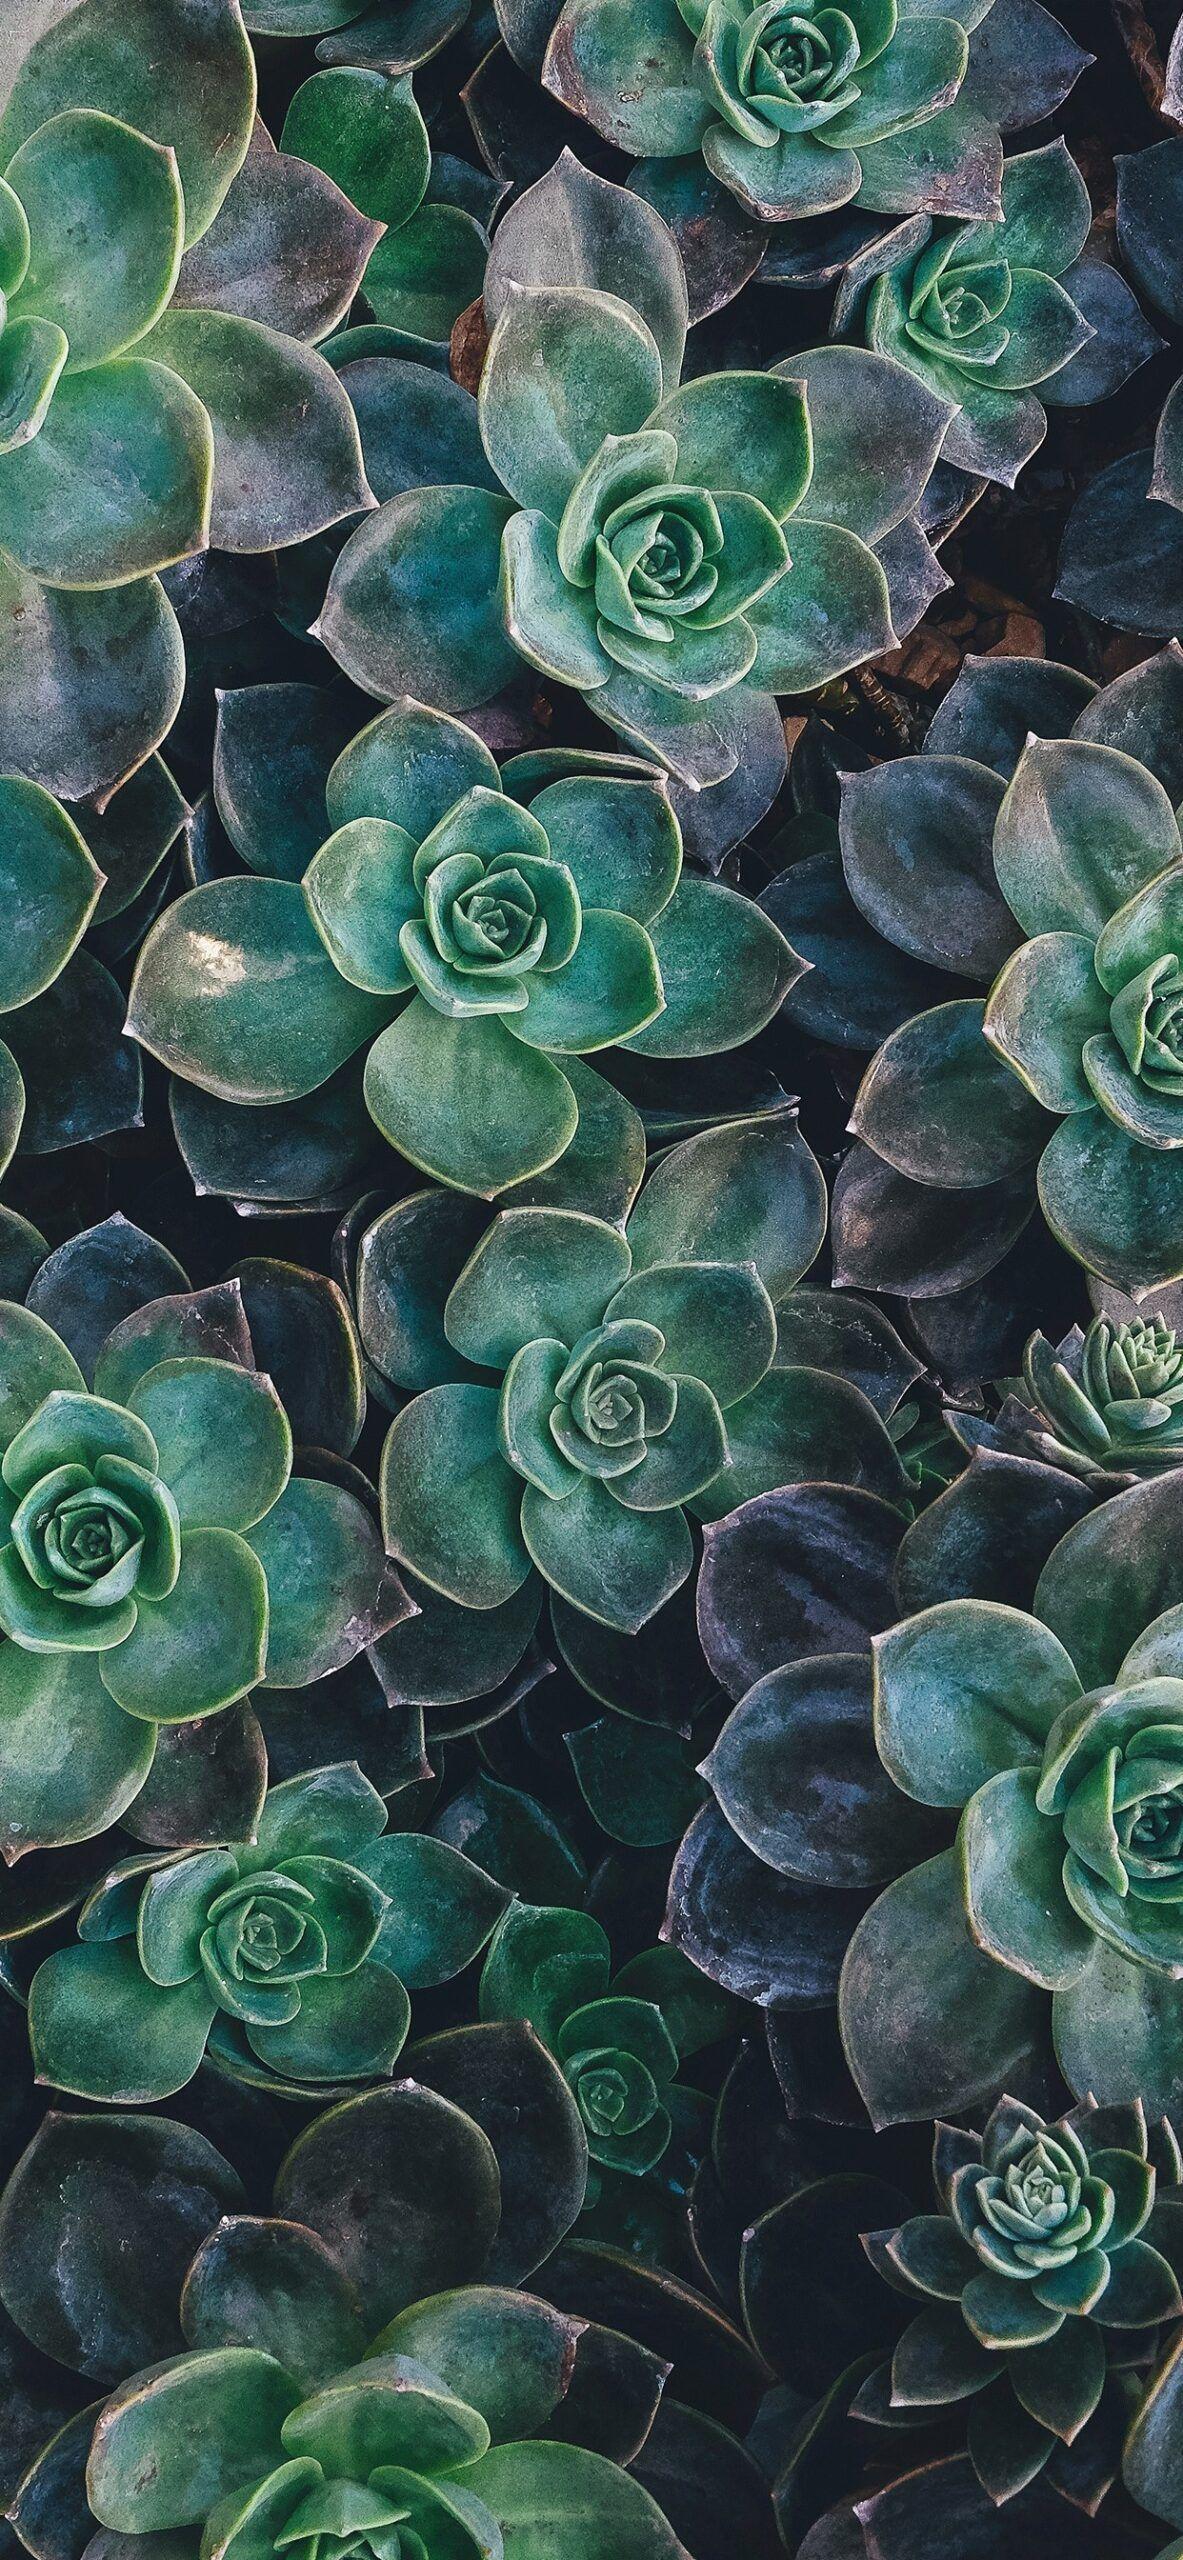 Succulent Plants Wallpapers - Top Free Succulent Plants Backgrounds ...